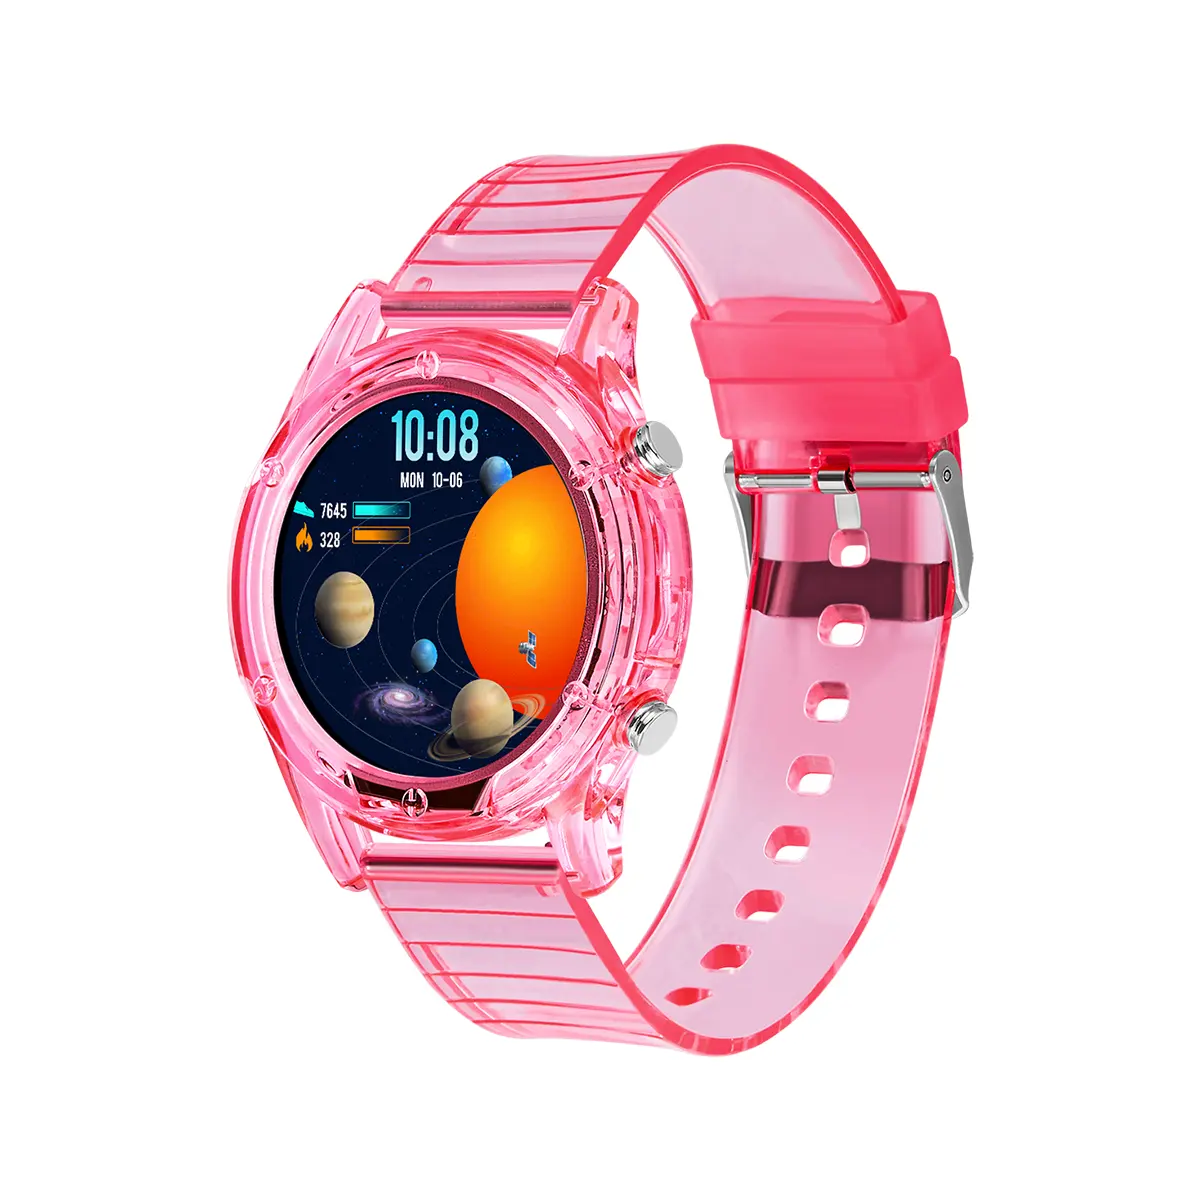 Yeni varış moda hediye silikon renkli ışık disk spor kol saati çocuk kadın kız erkek S10 1.28 inç serin Smartwatch